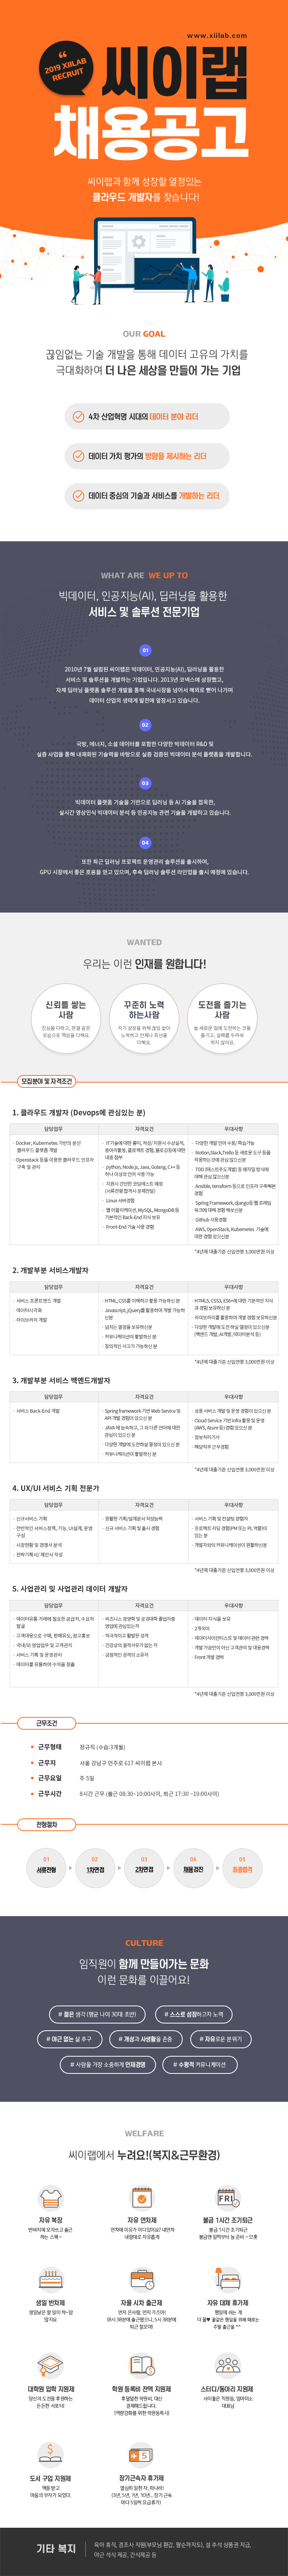 2019 씨이랩 신입/경력 공개채용